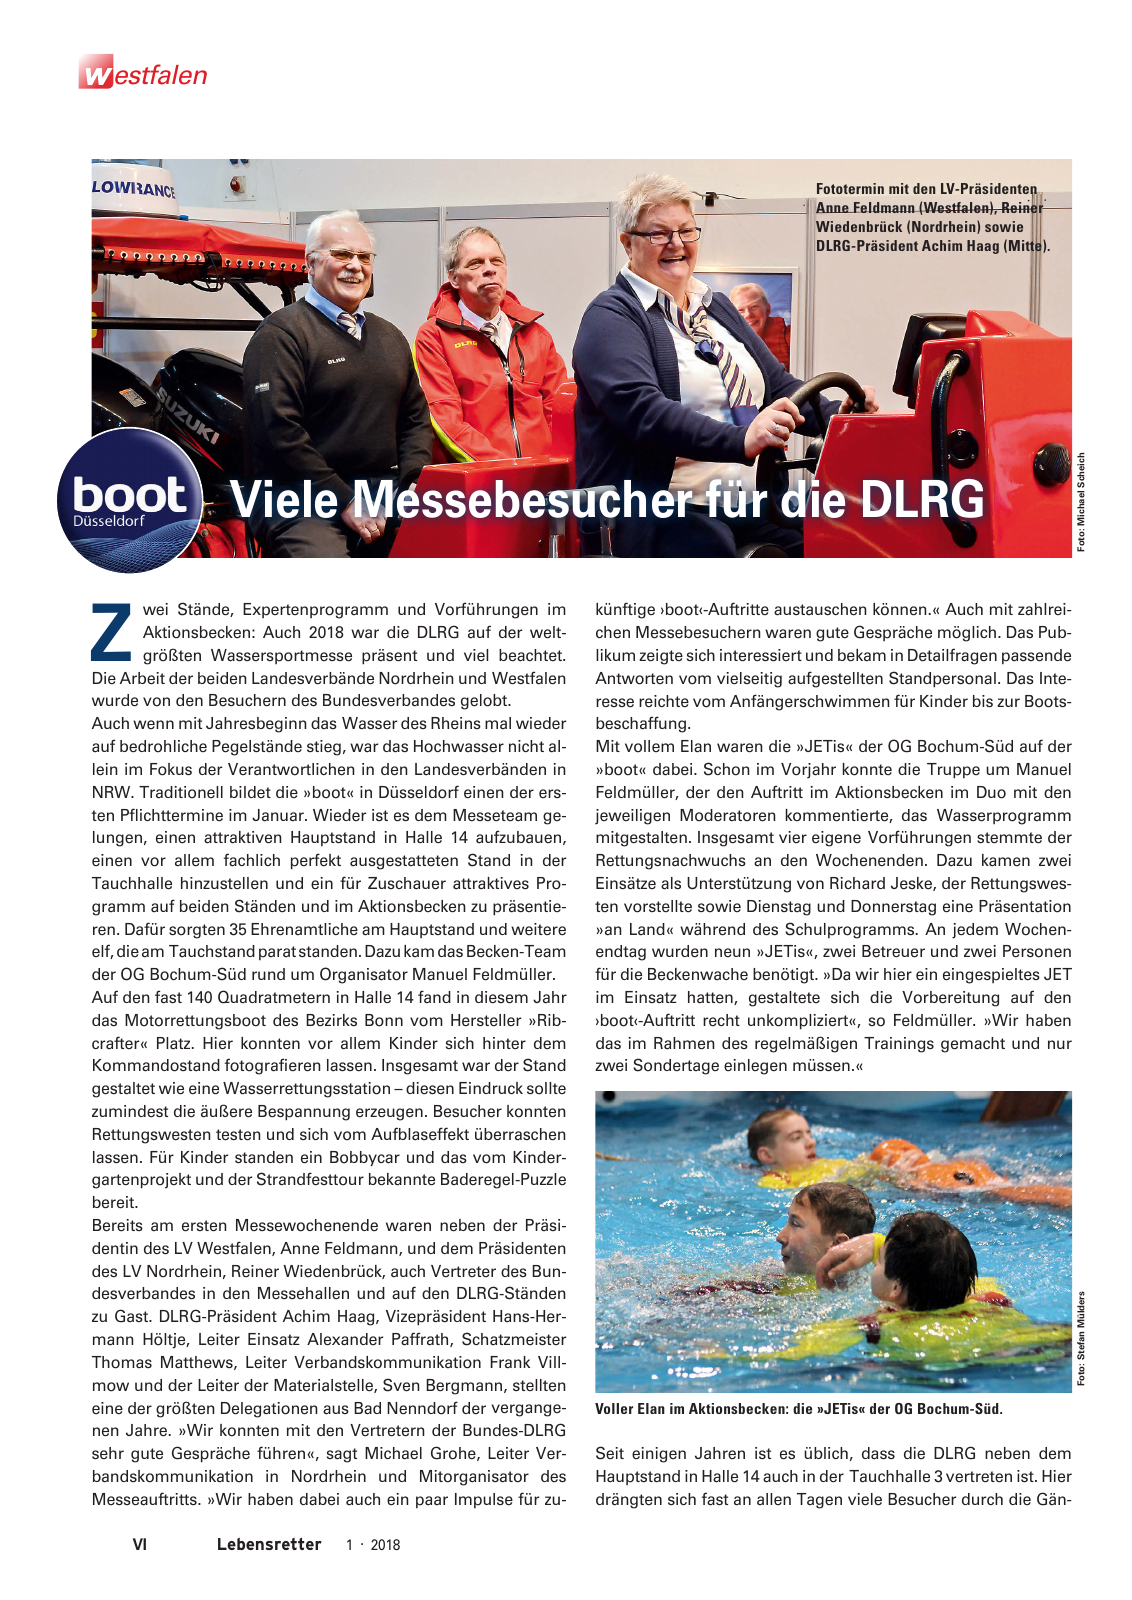 Vorschau Lebensretter 1/2018 - Regionalausgabe Westfalen Seite 8